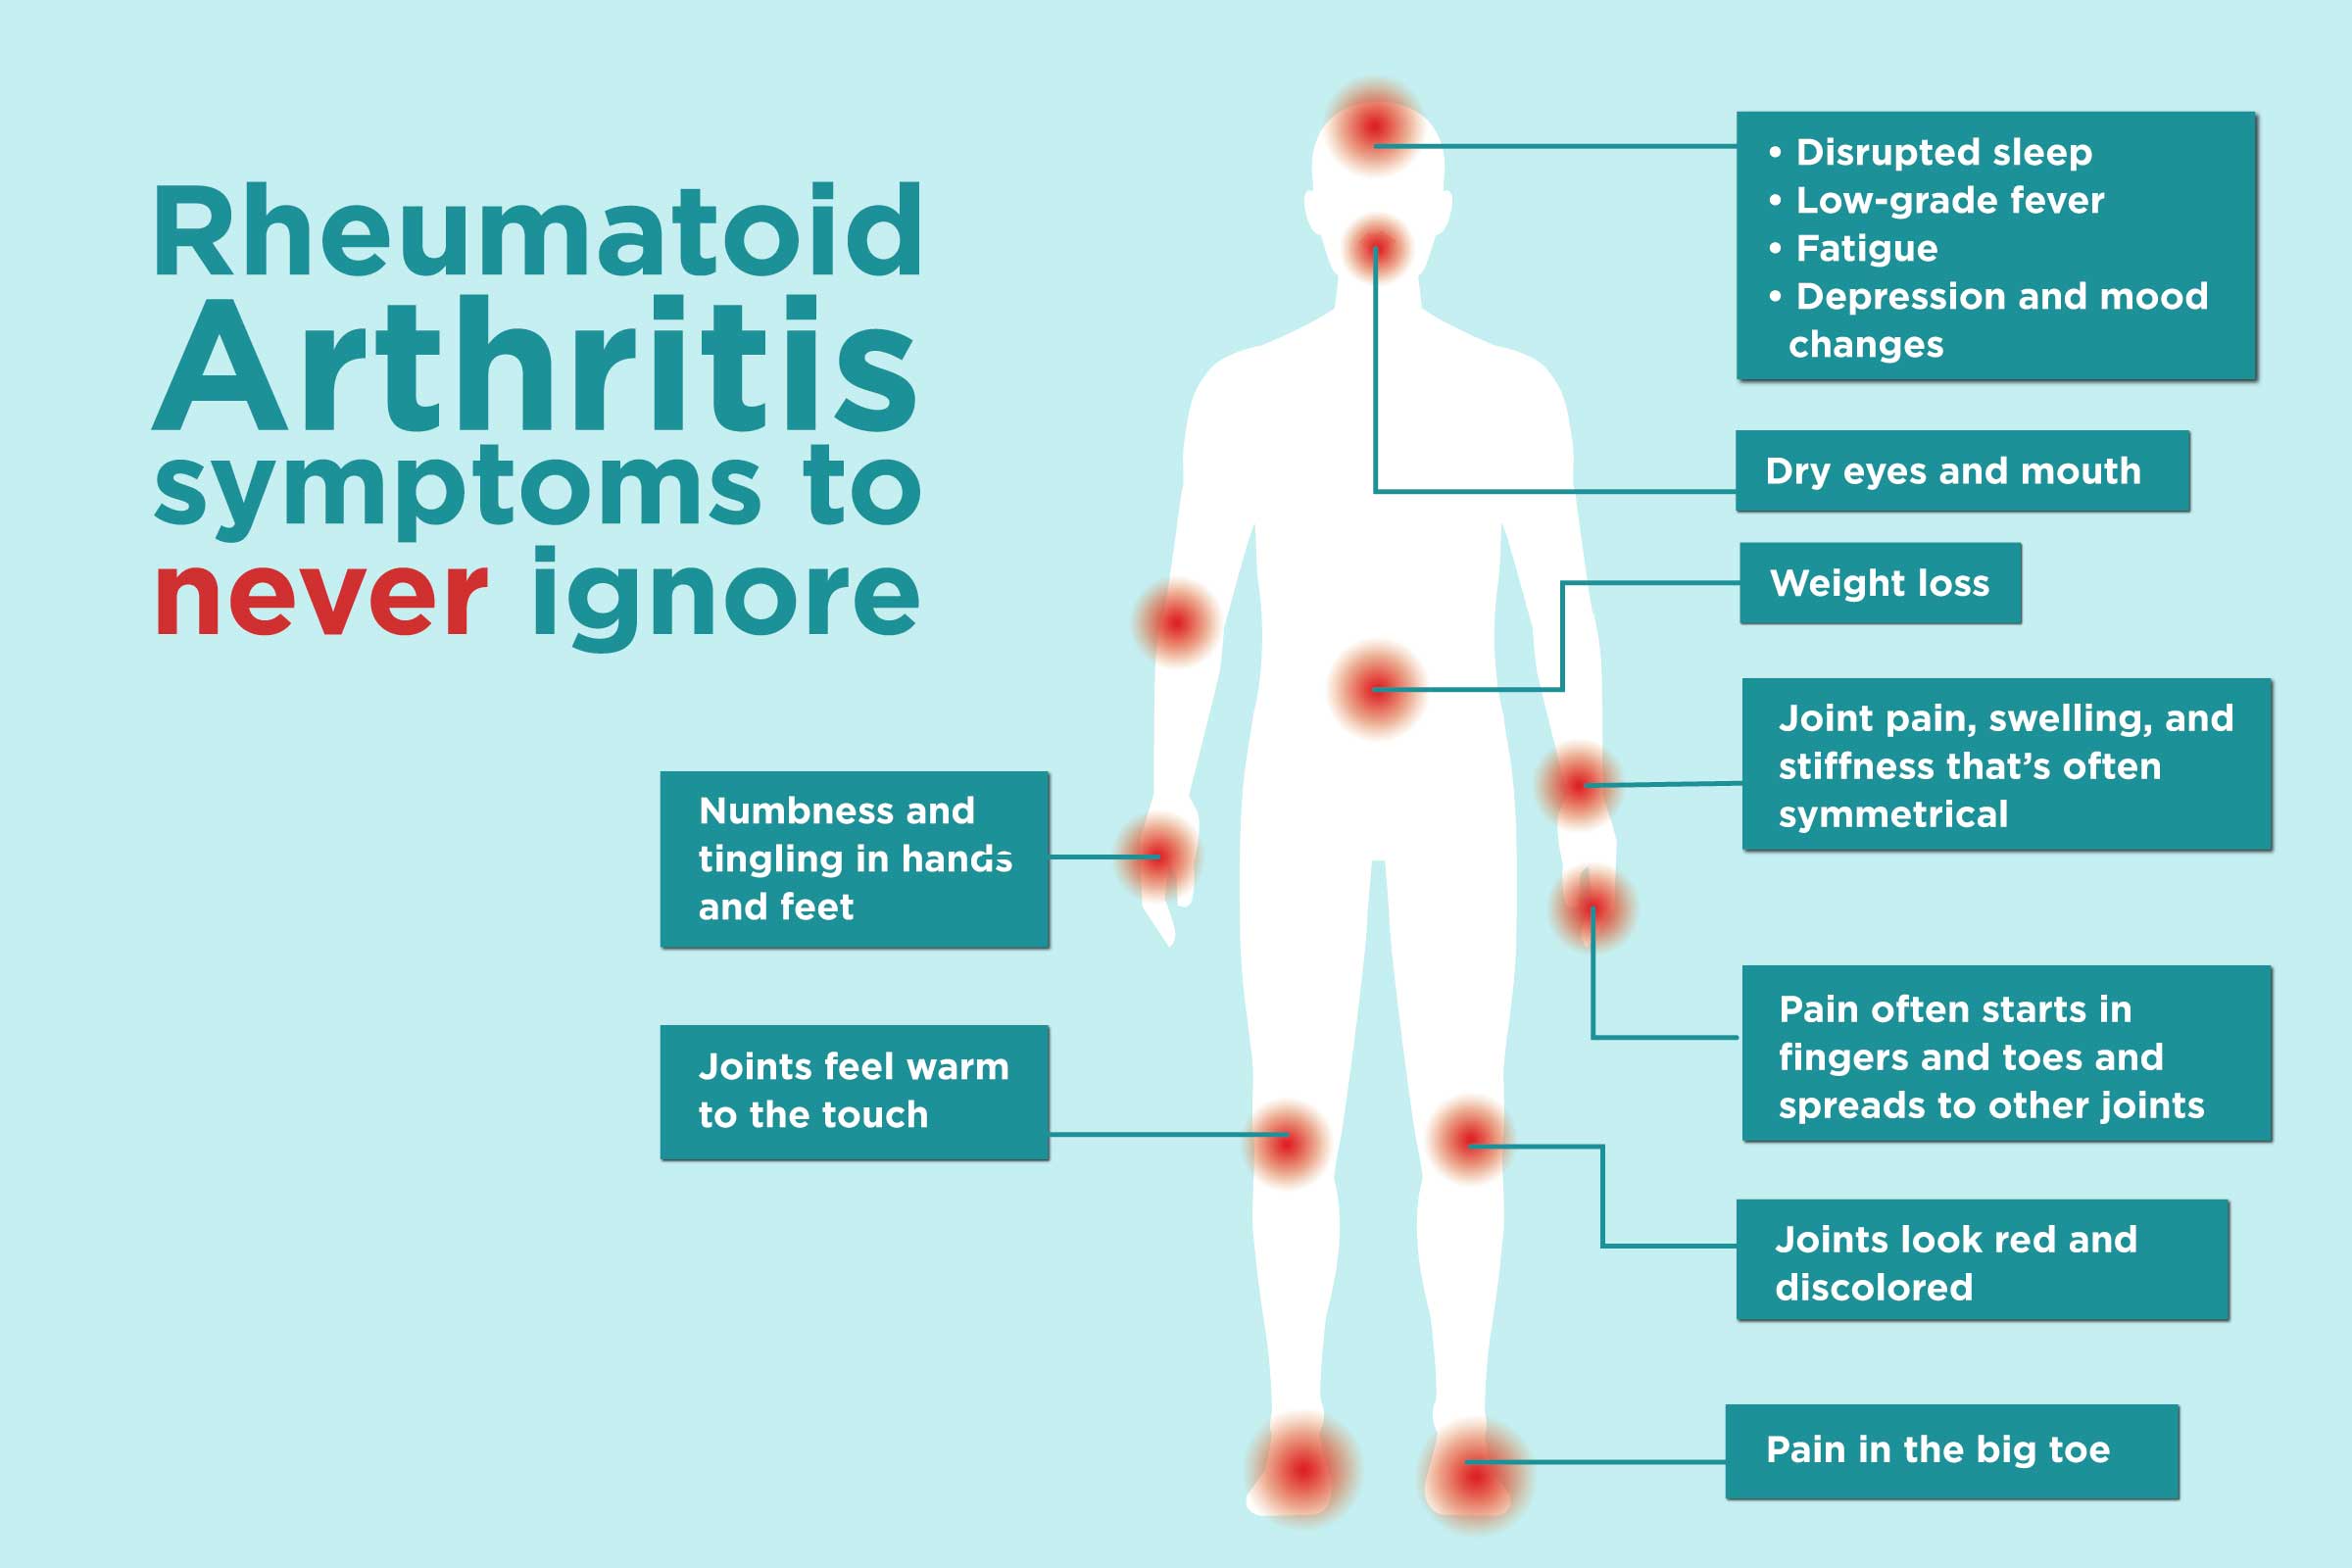 Treatments for rheumatoid arthritis may lower dementia risk